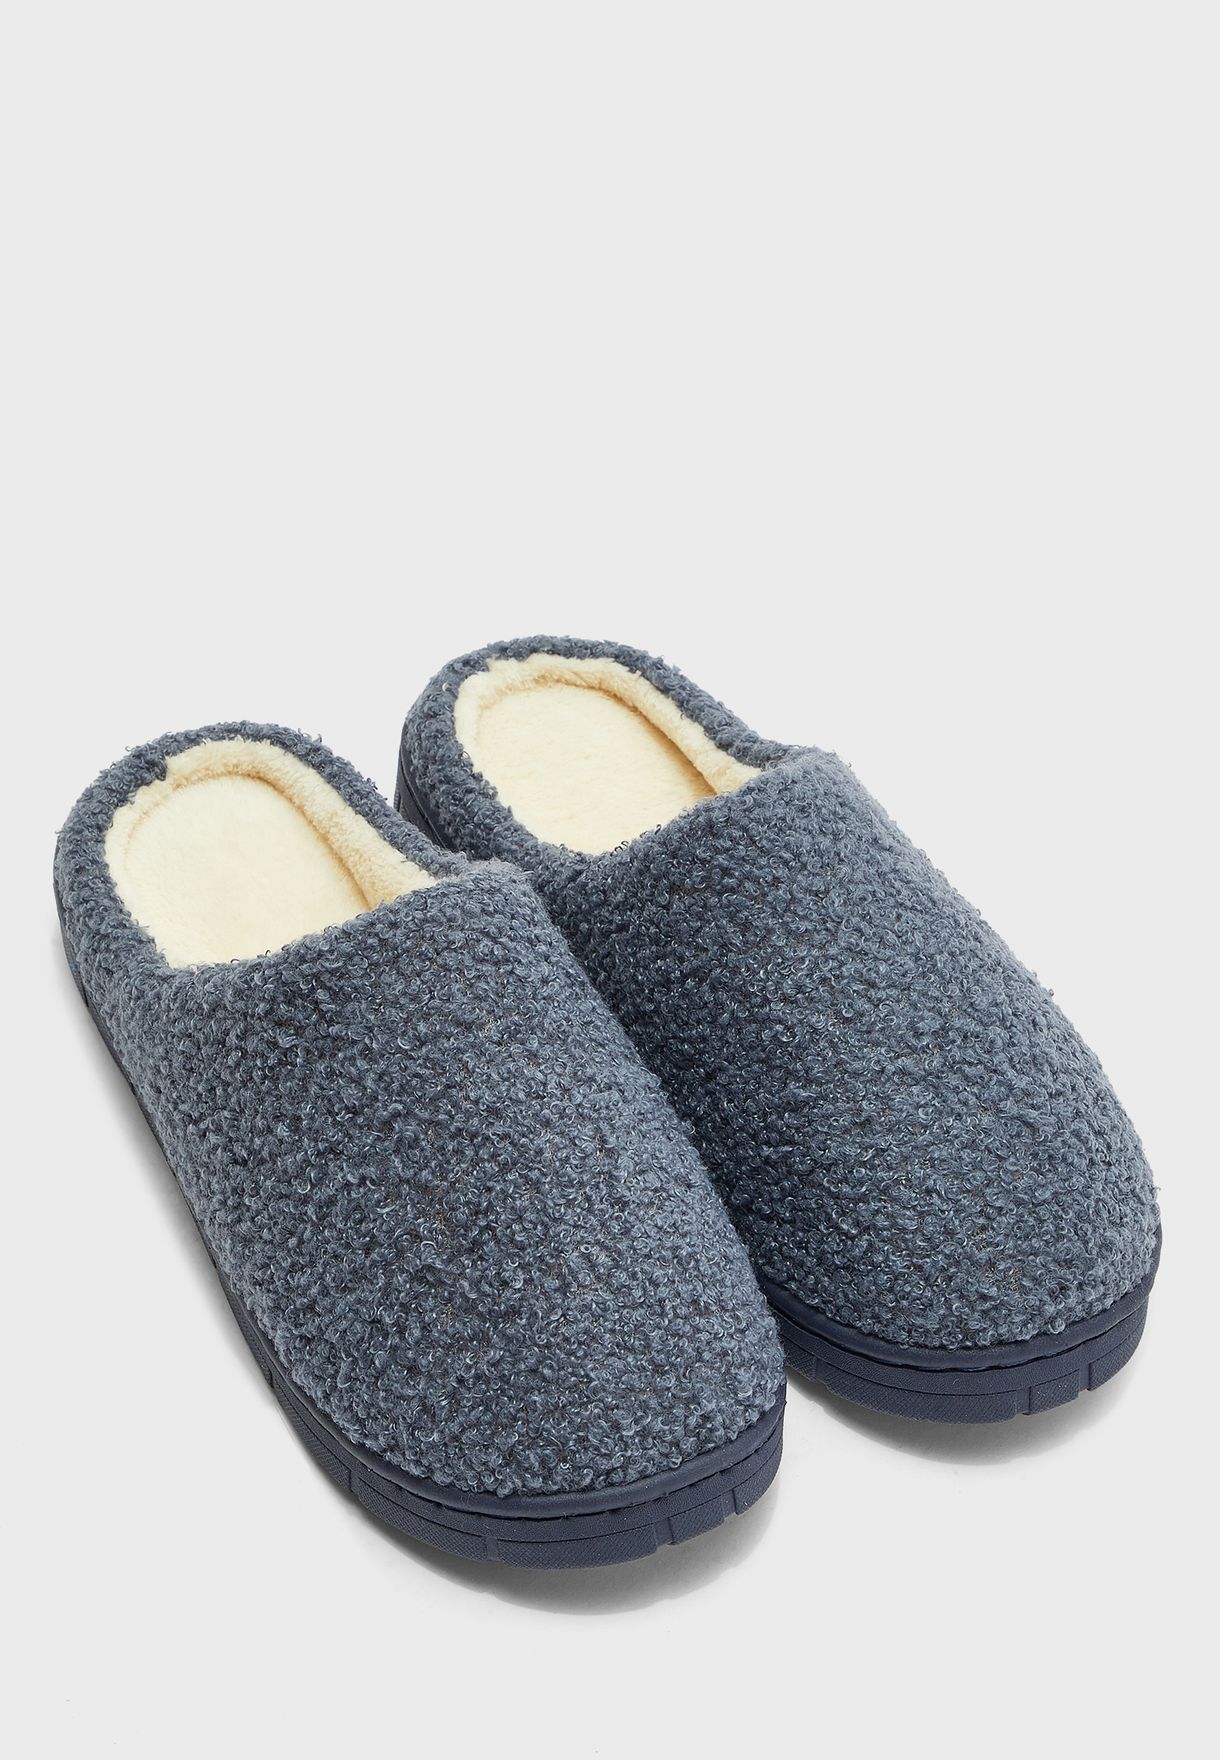 slip on bedroom slippers